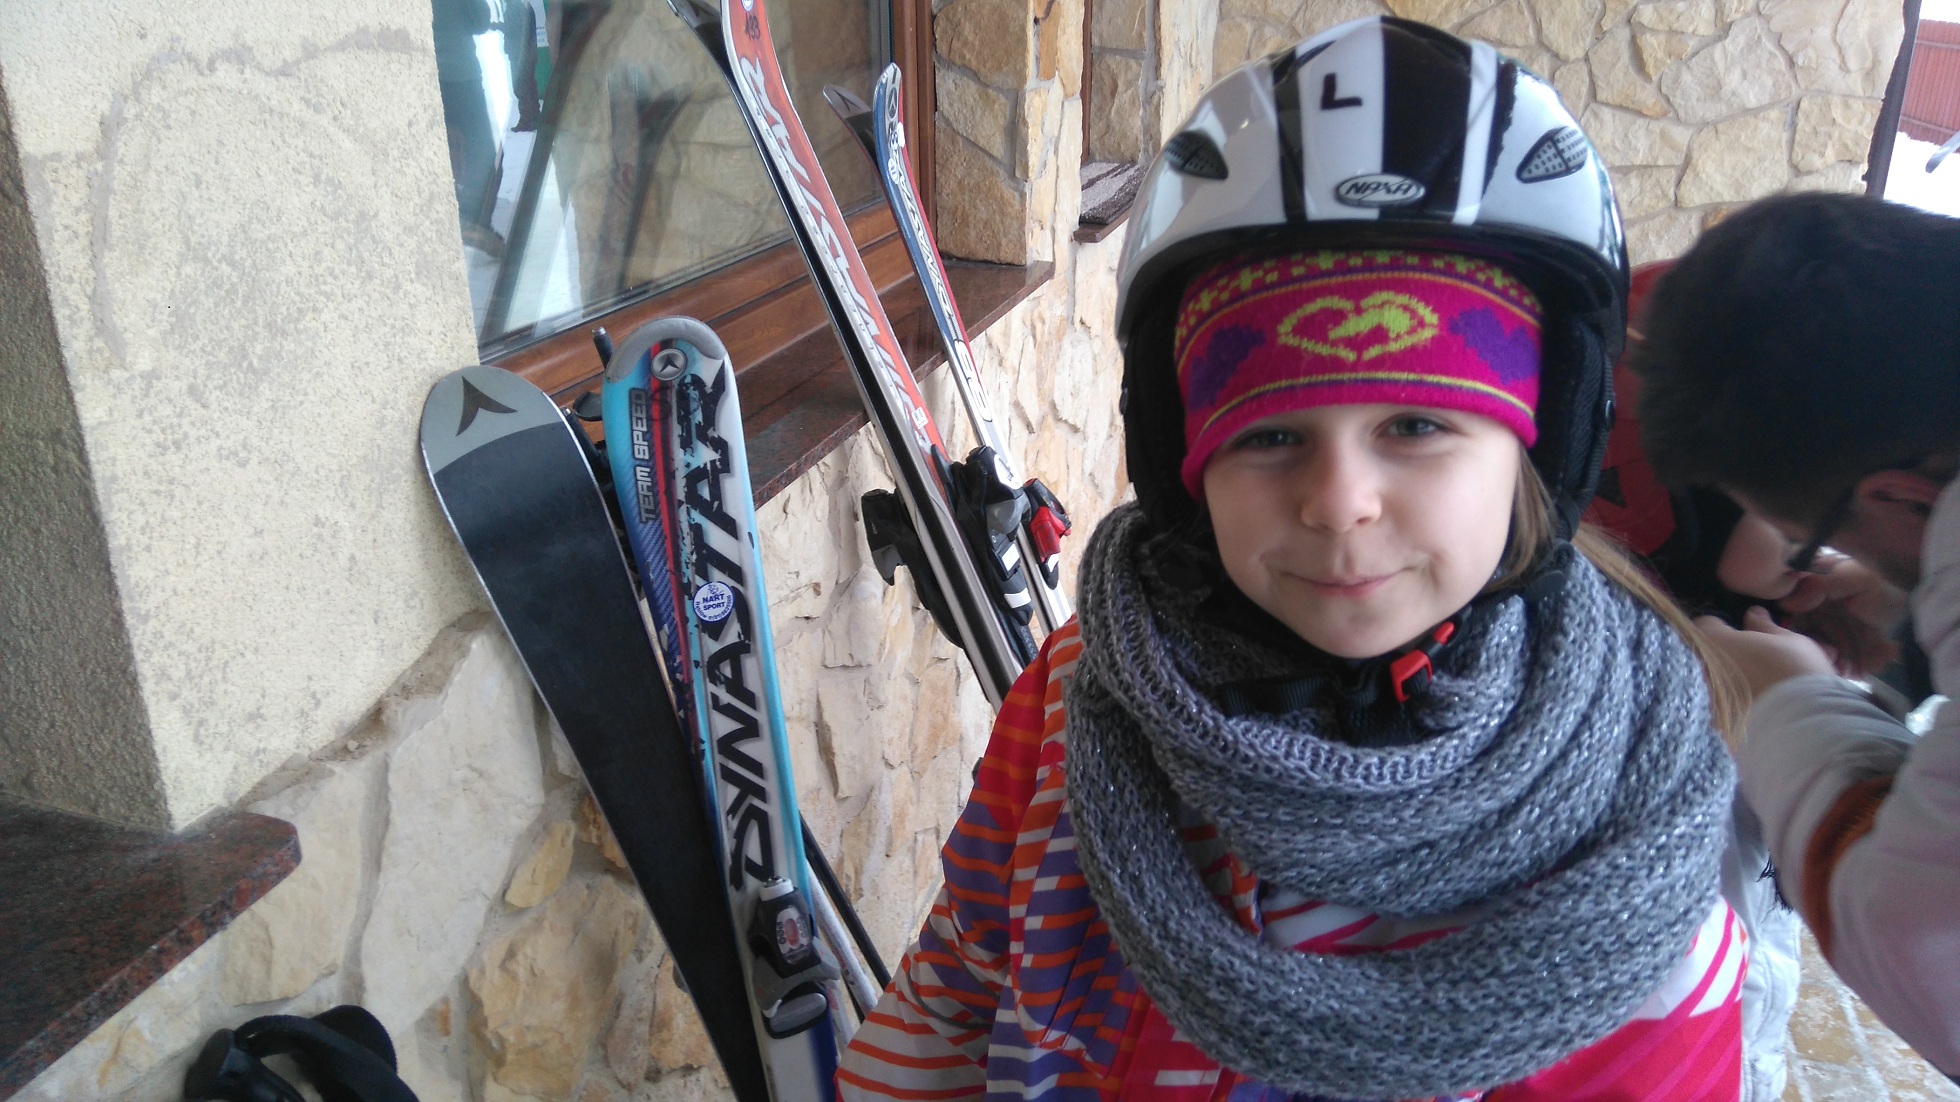 dziewczynka w stroju narciarskim, obok narty ooarte o ścianę budynku